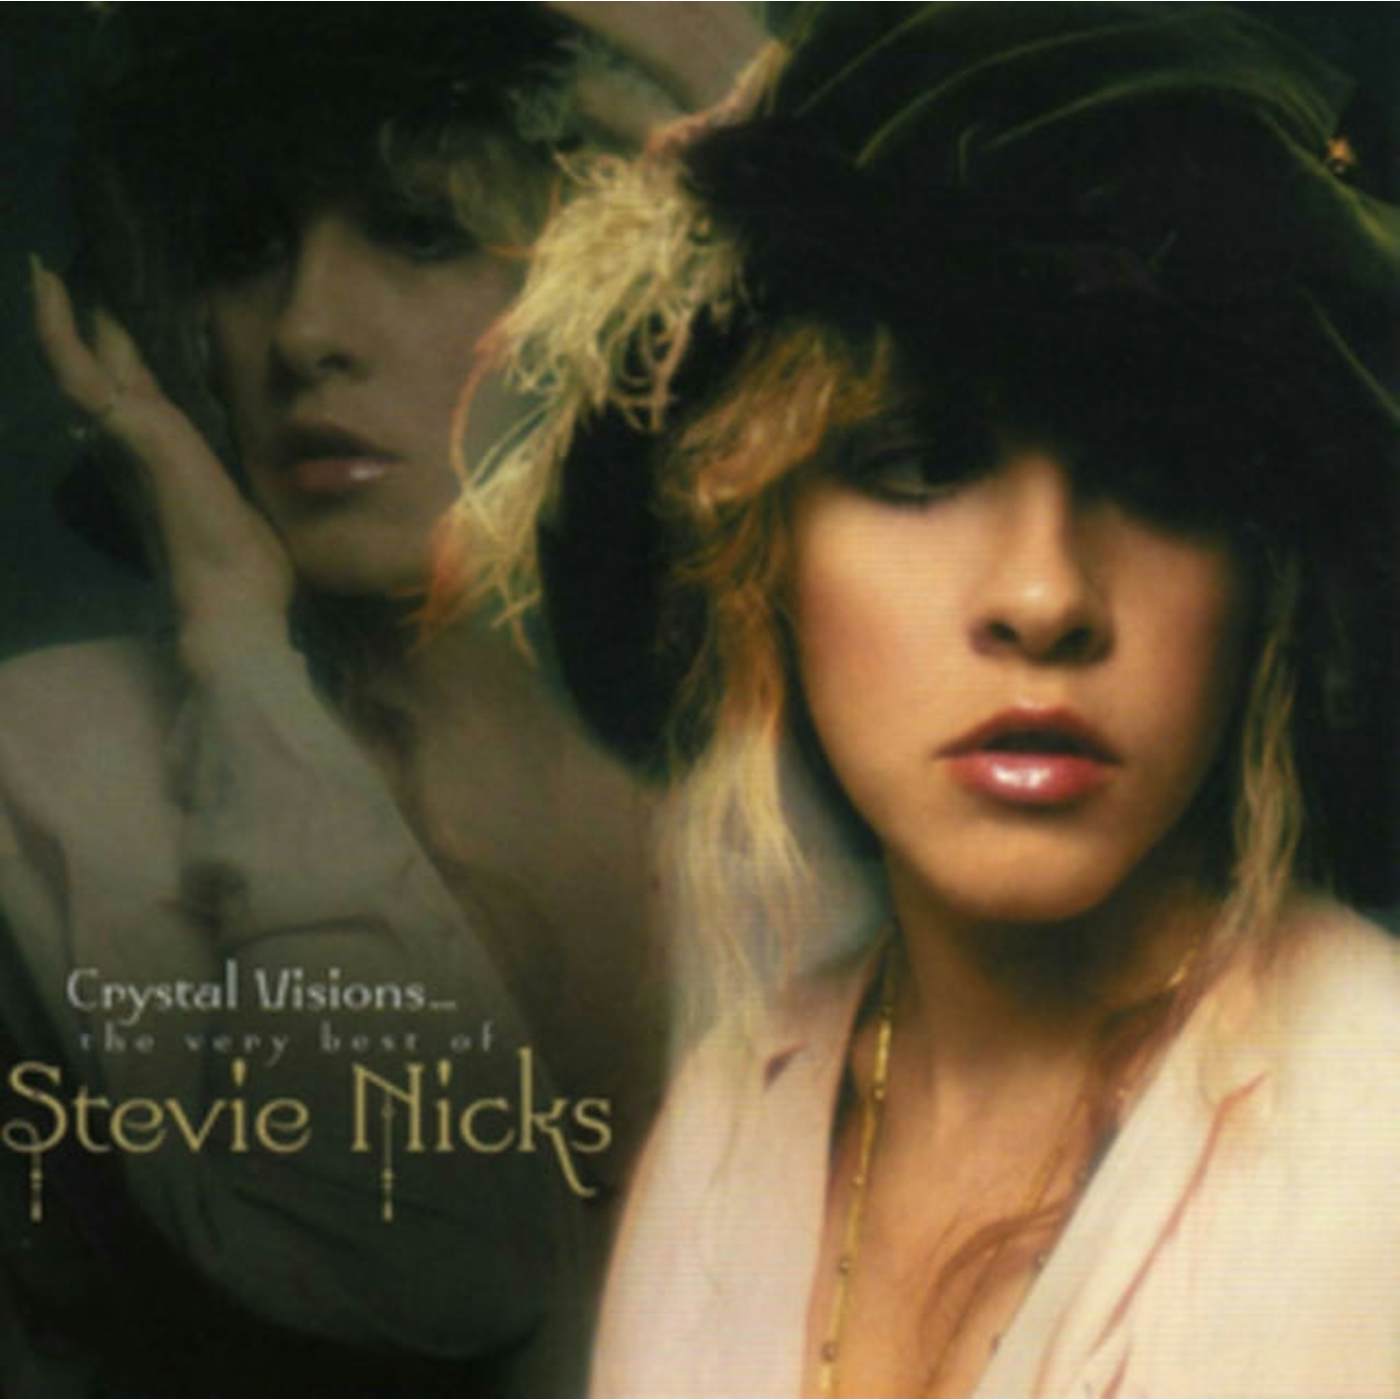 Stevie Nicks CD - Crystal Visions - The Very Best Of